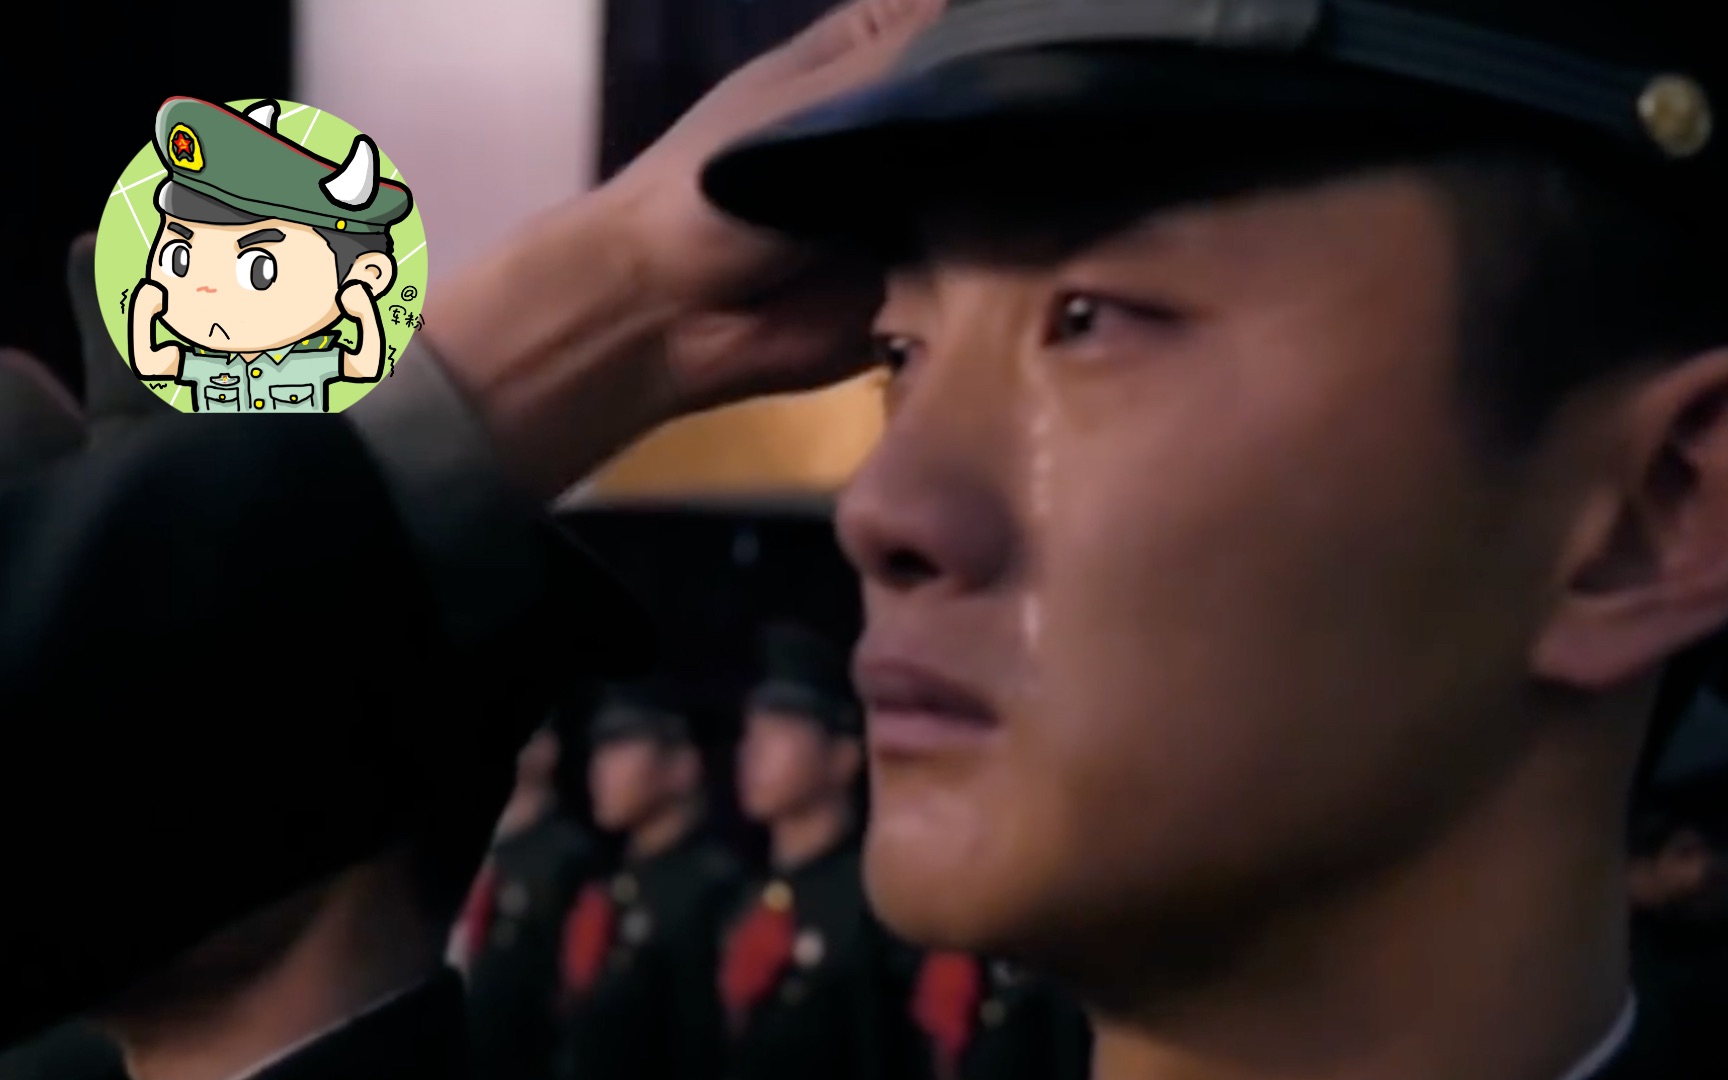 军人的眼泪图片